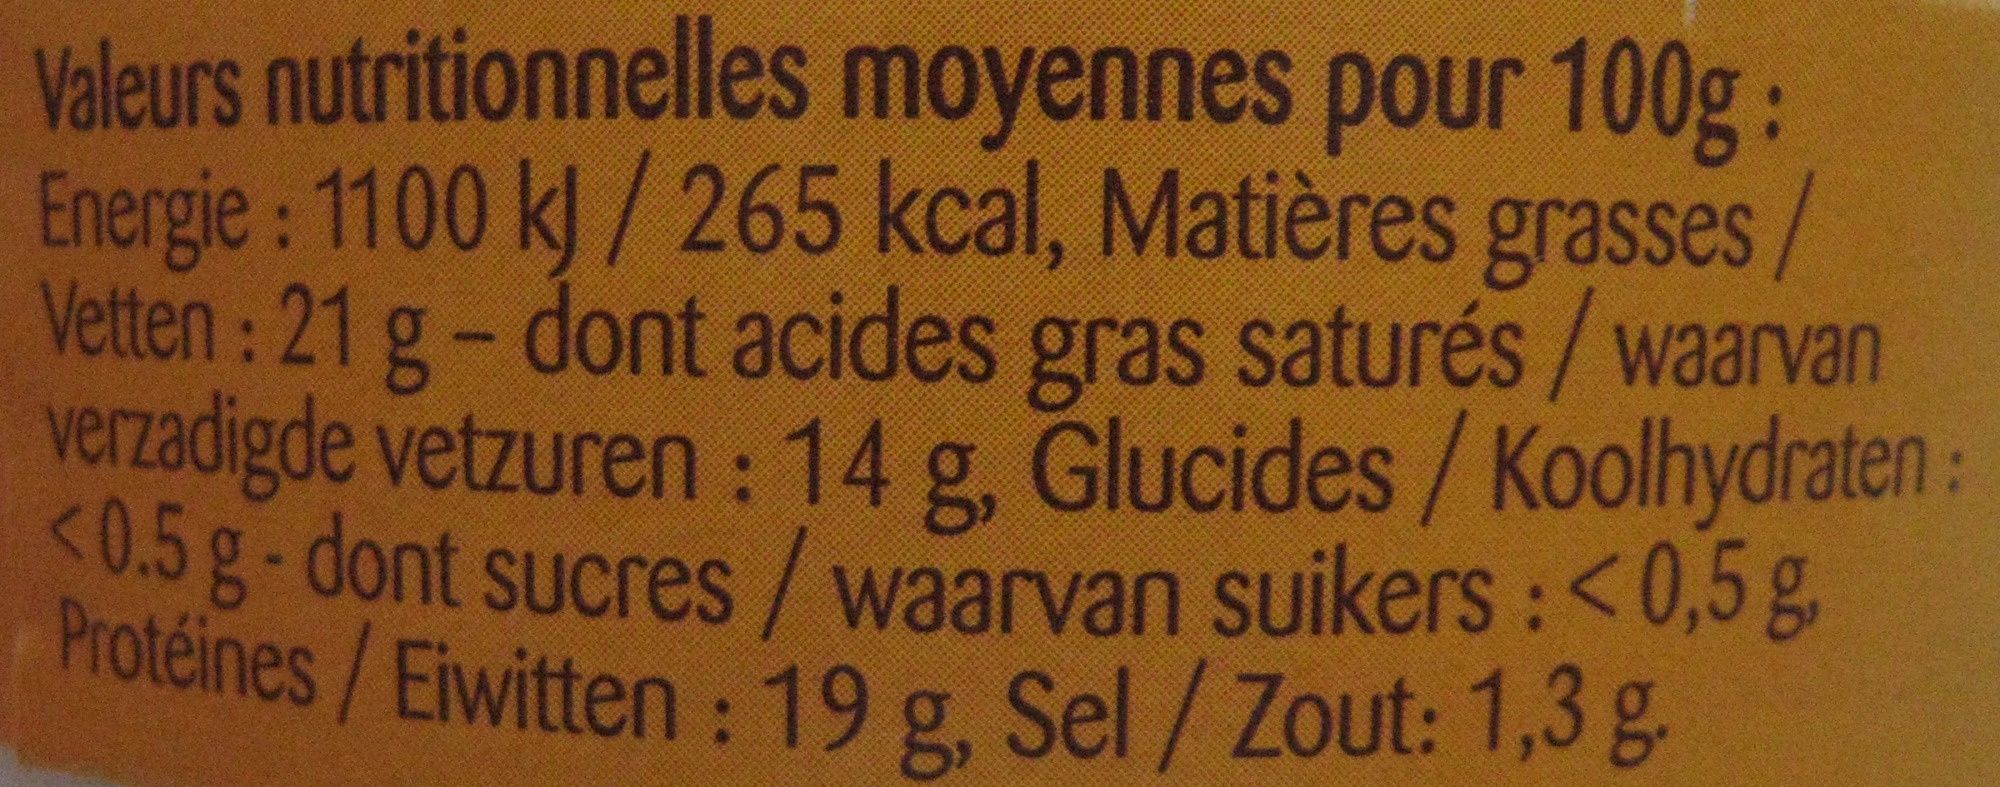 Camembert au Lait Pasteurisé - Valori nutrizionali - fr